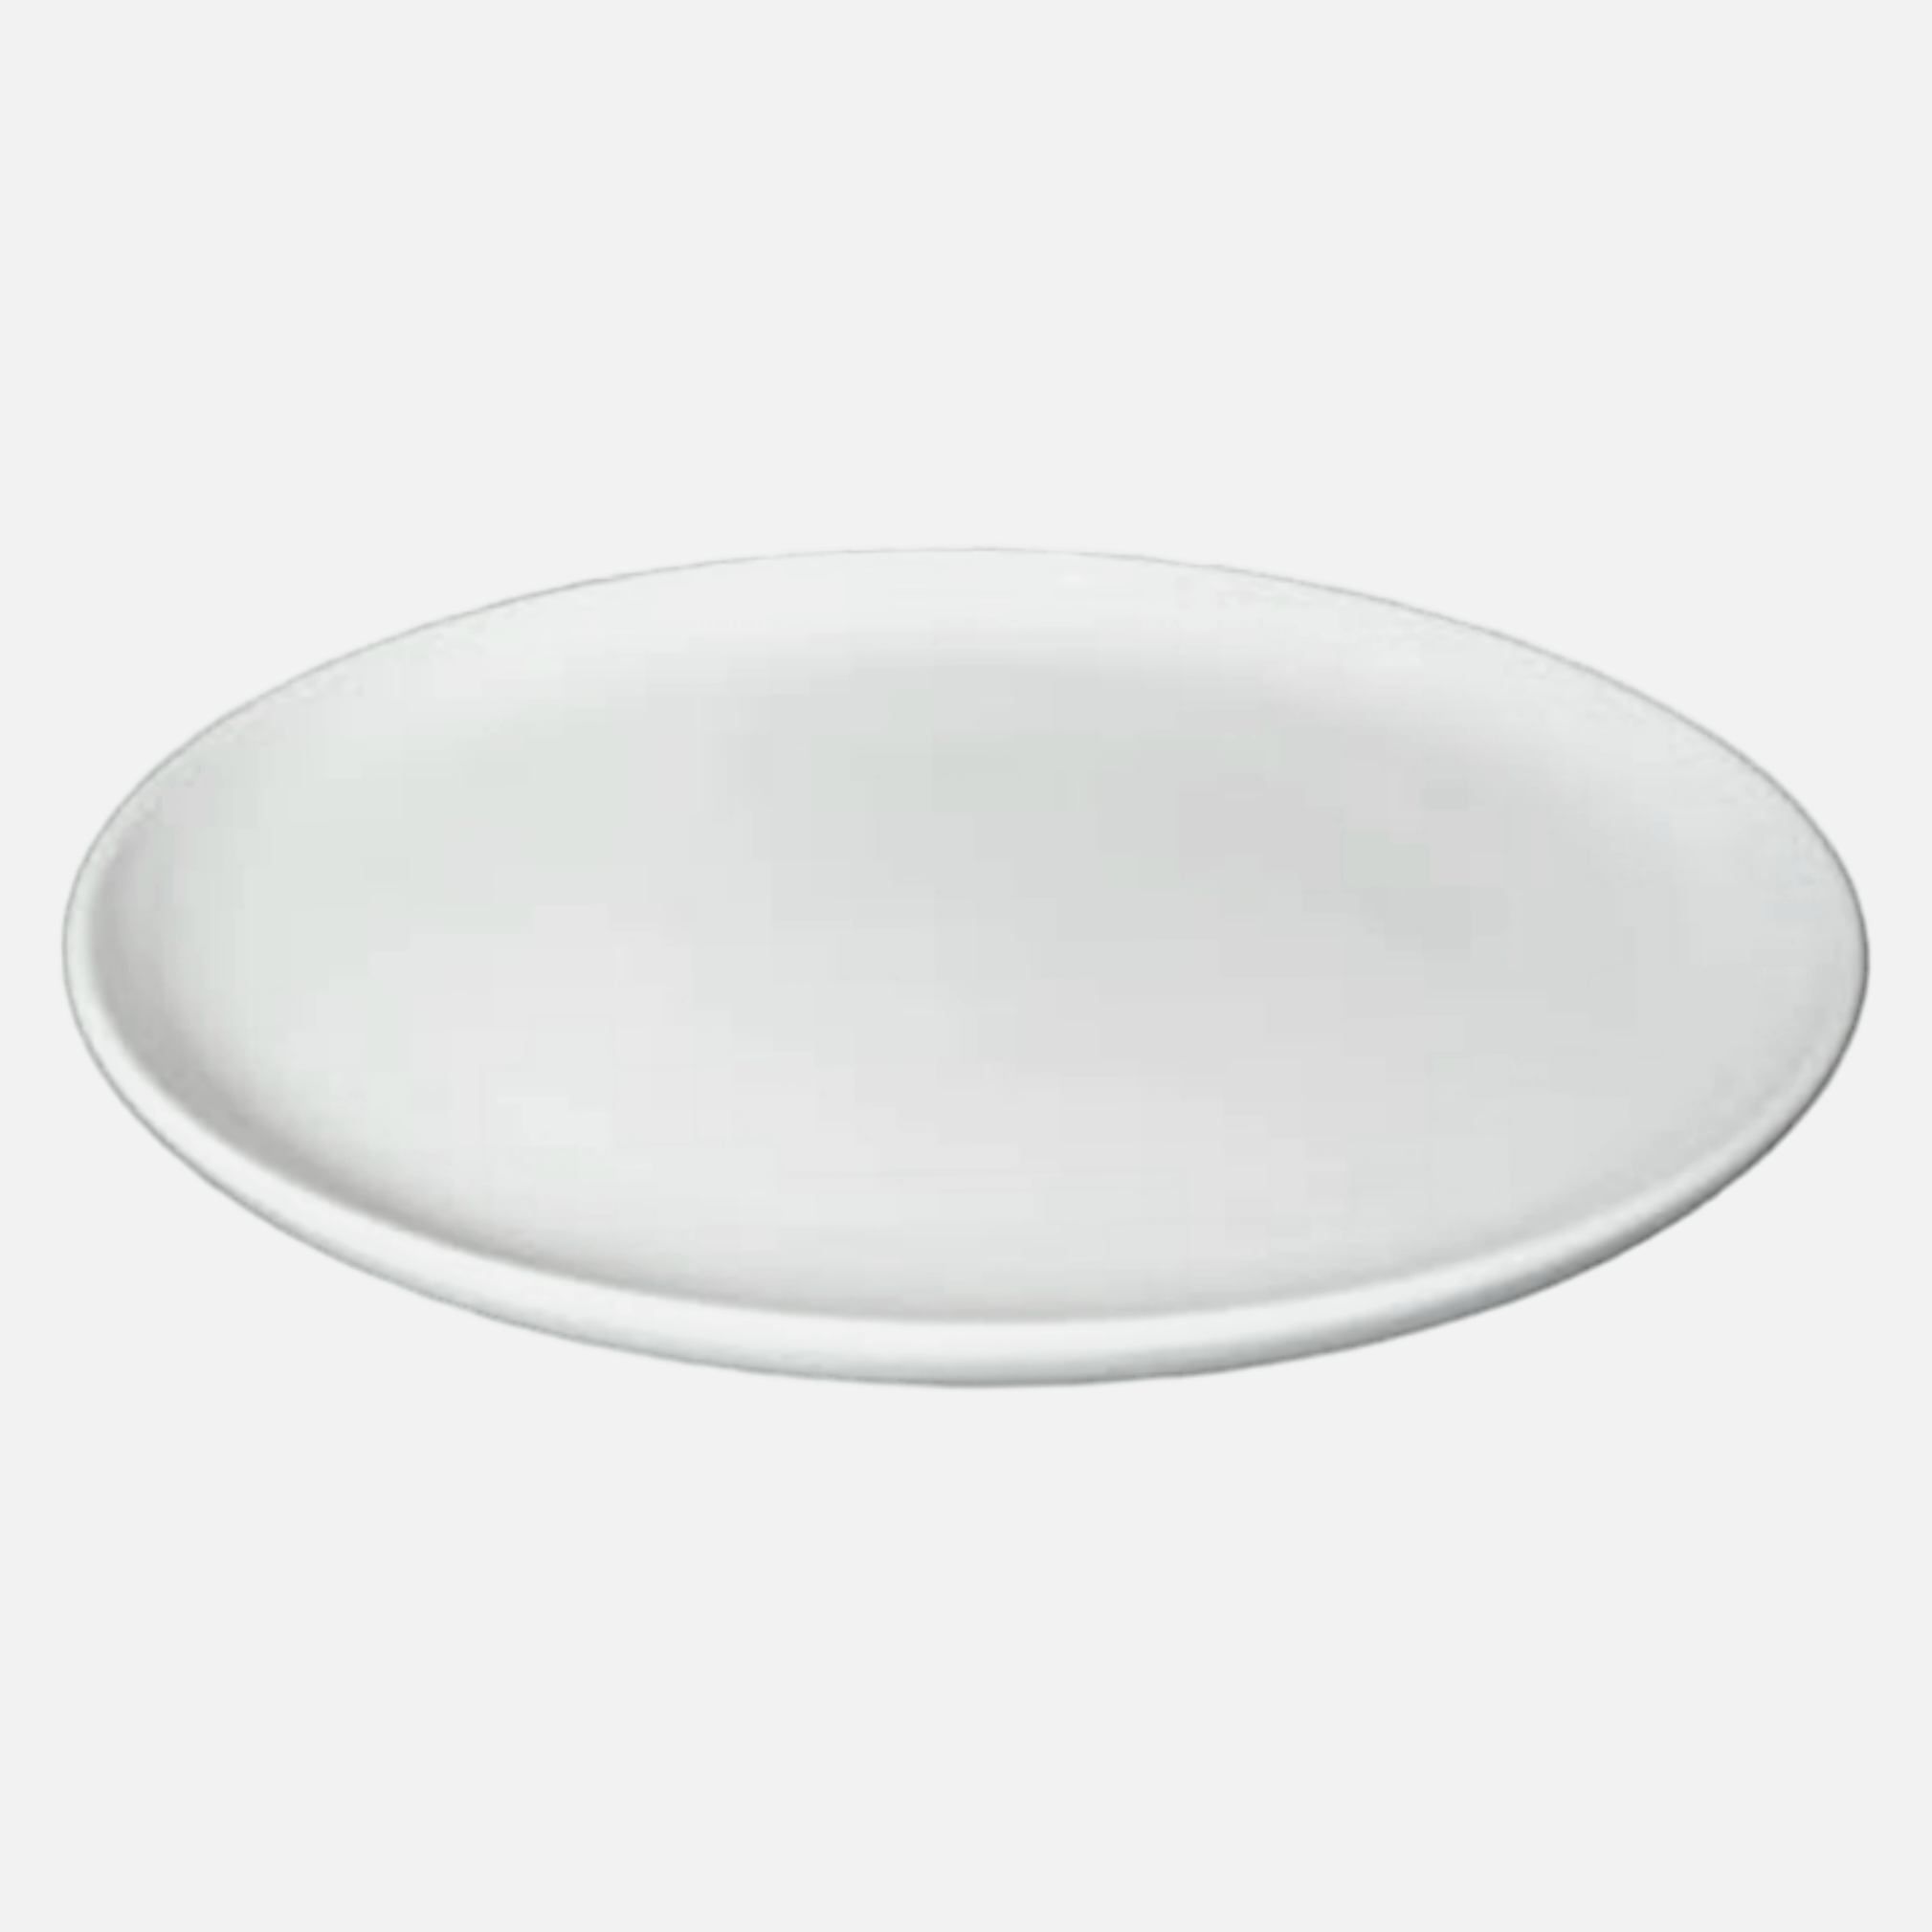 Ceramic White Dinner Plate 10.5inch